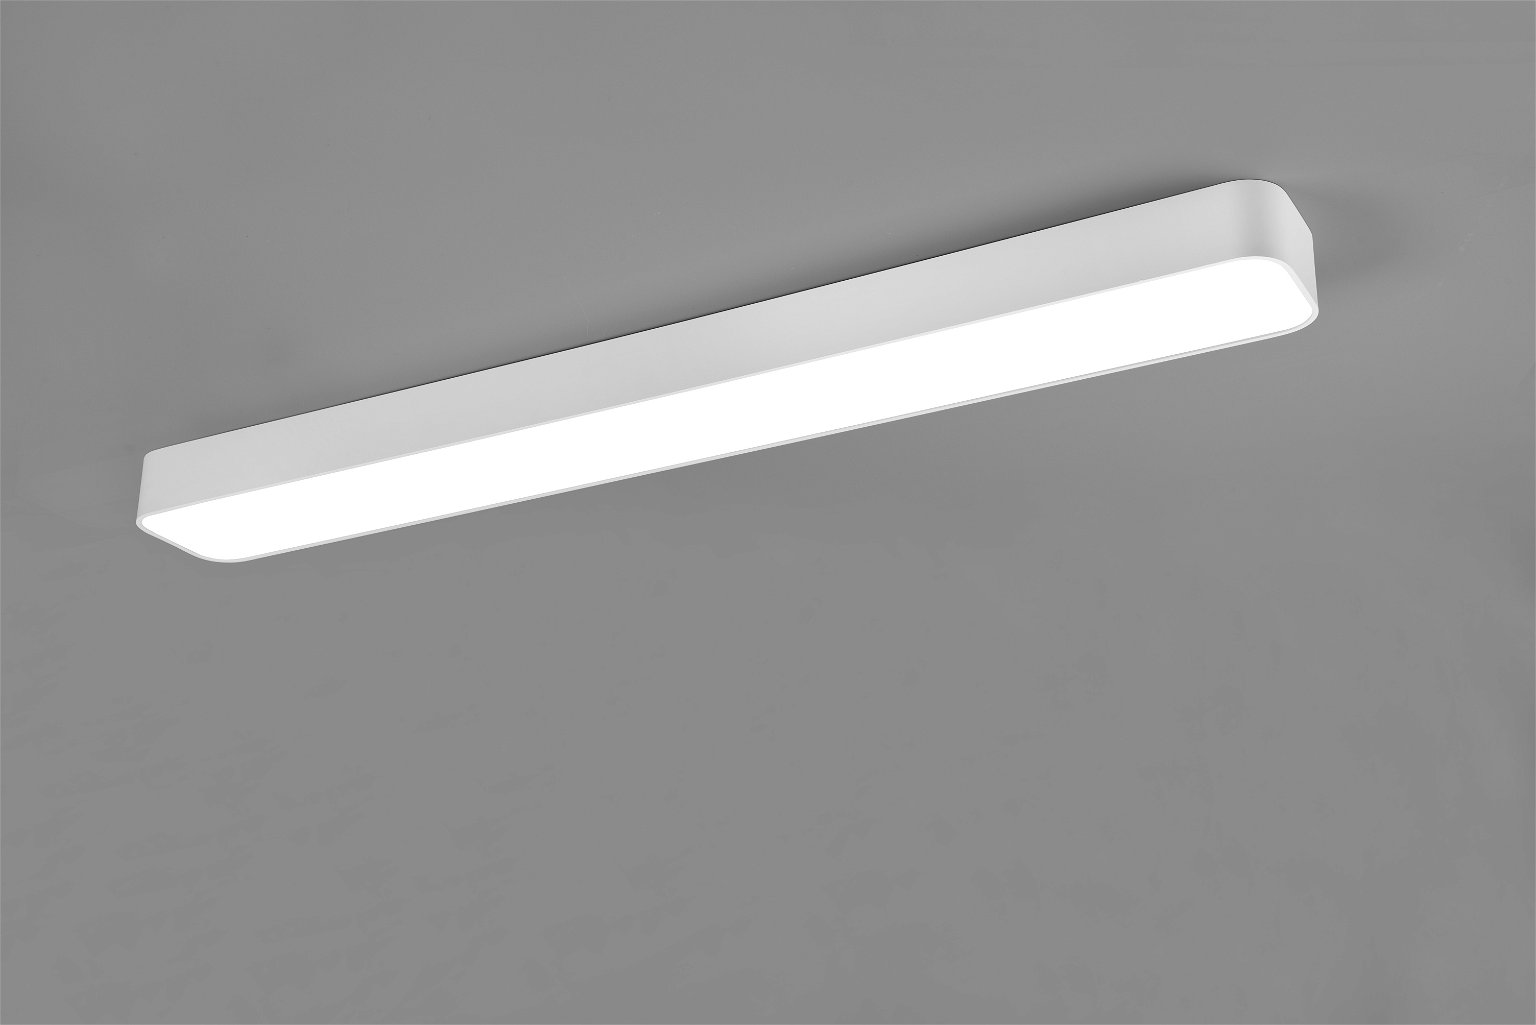 Lubinis LED šviestuvas REALITY ASTERION, 37W, max 3800lm, 2700-6500K, 118x14xh7cm, valdomas pulteliu - 1